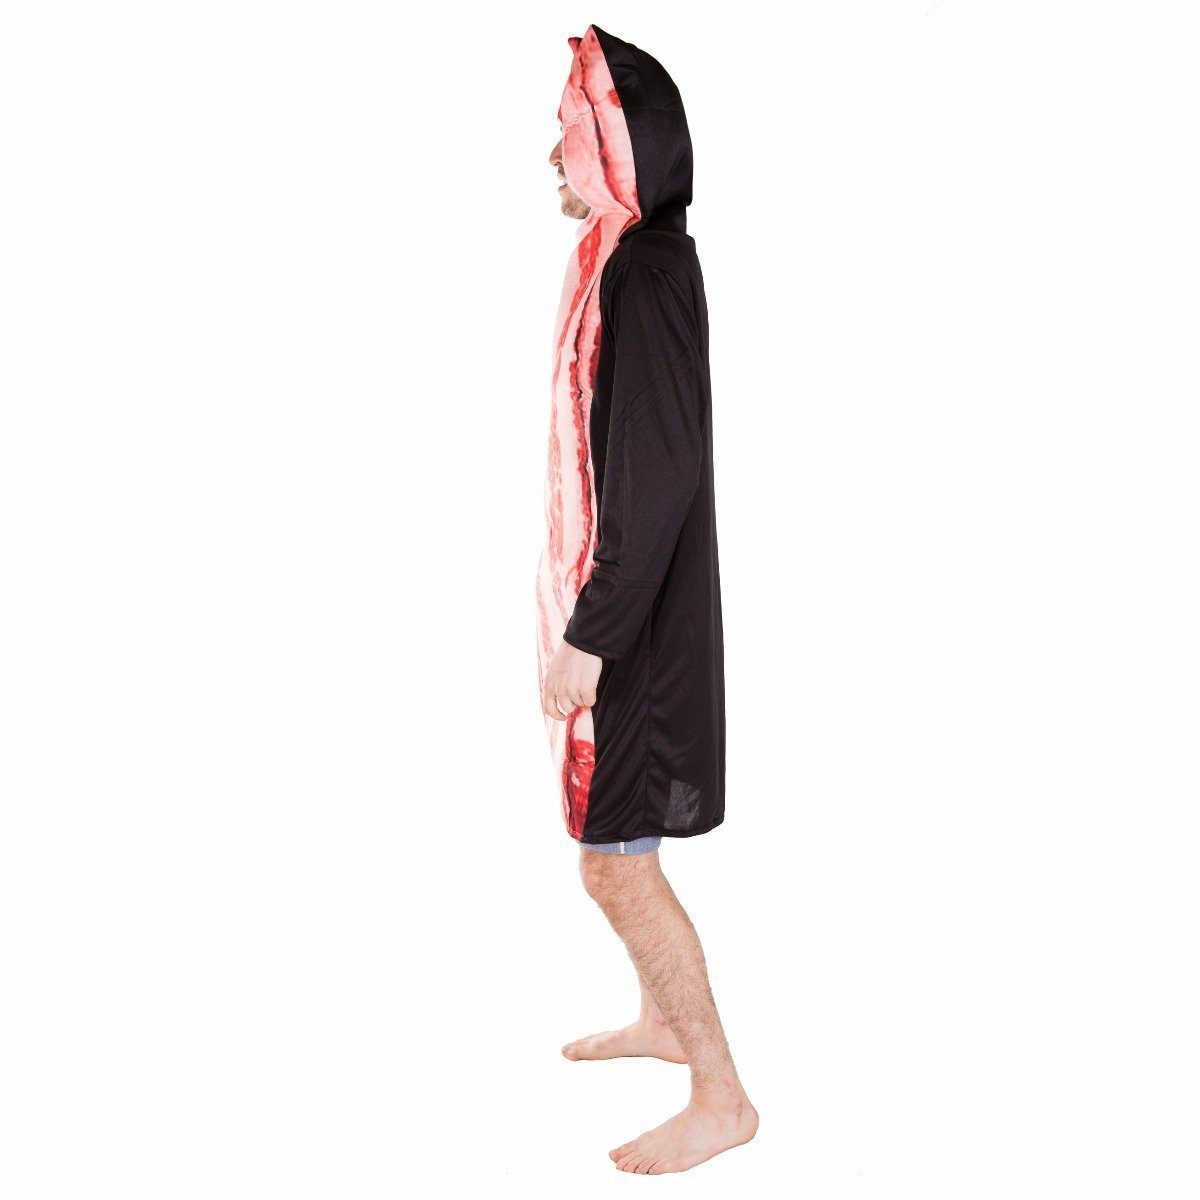 Fancy Dress - Bacon Costume